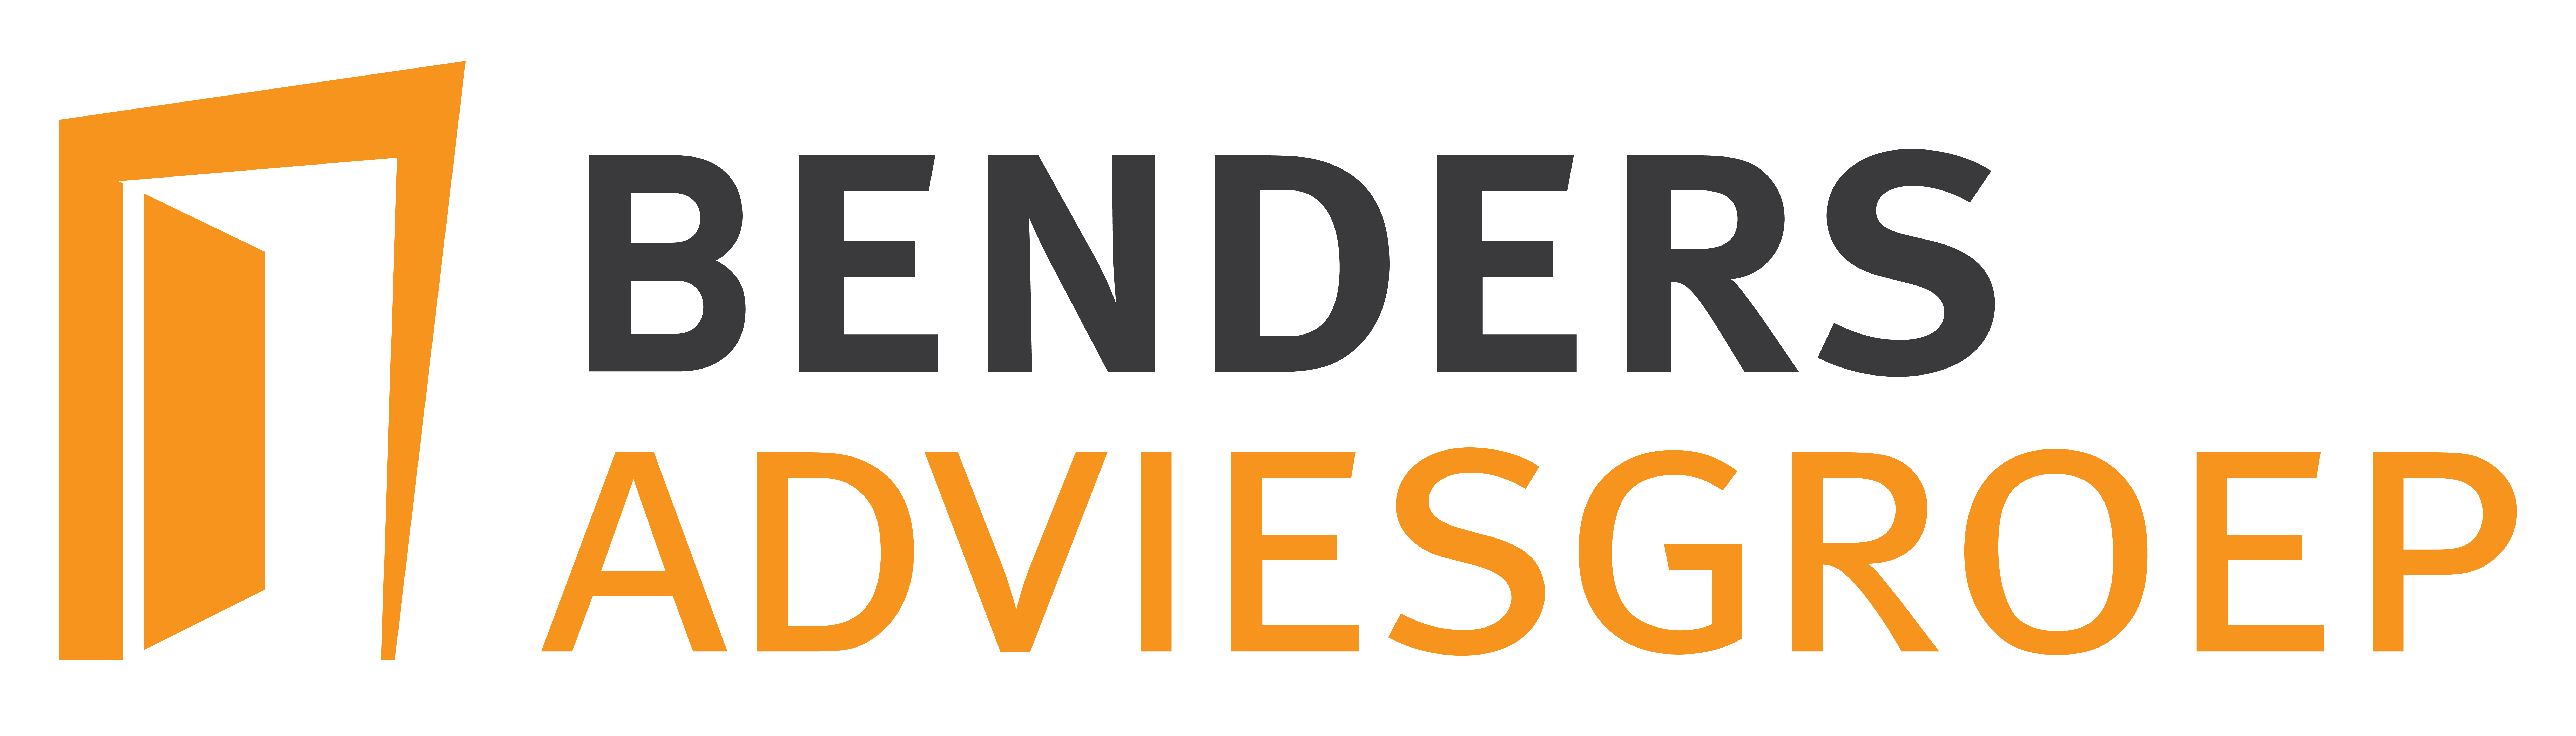 Benders Adviesgroep logo